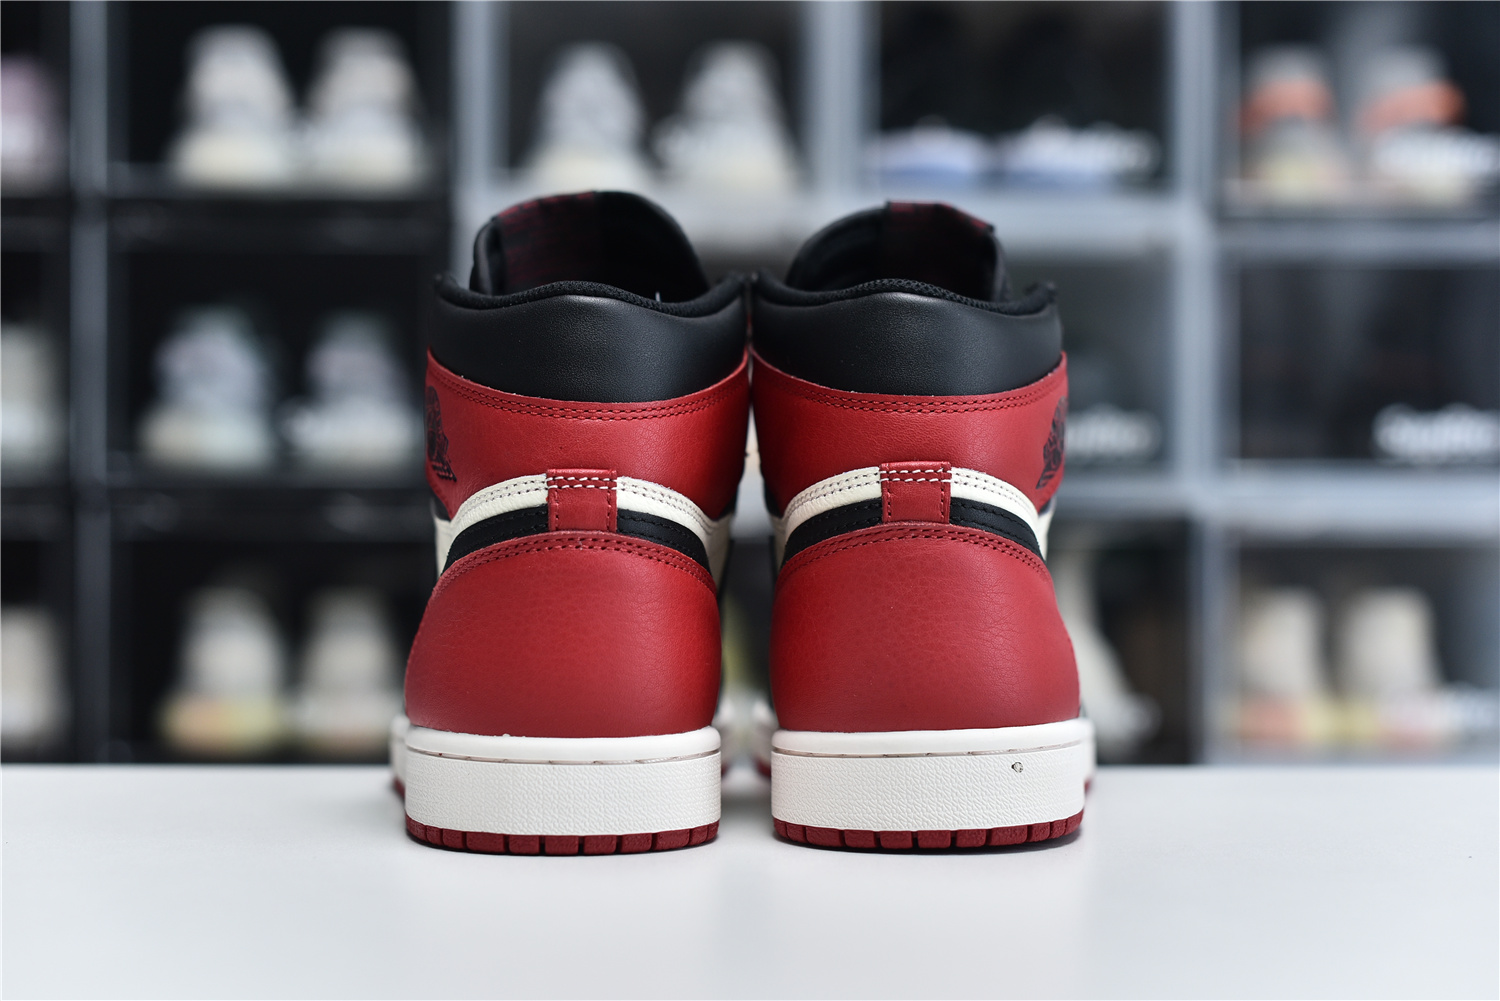 Nike Air Jordan 1 Retro High Og Red Black White Men Sneakers 555088 610 Kickbulk 4 - kickbulk.org